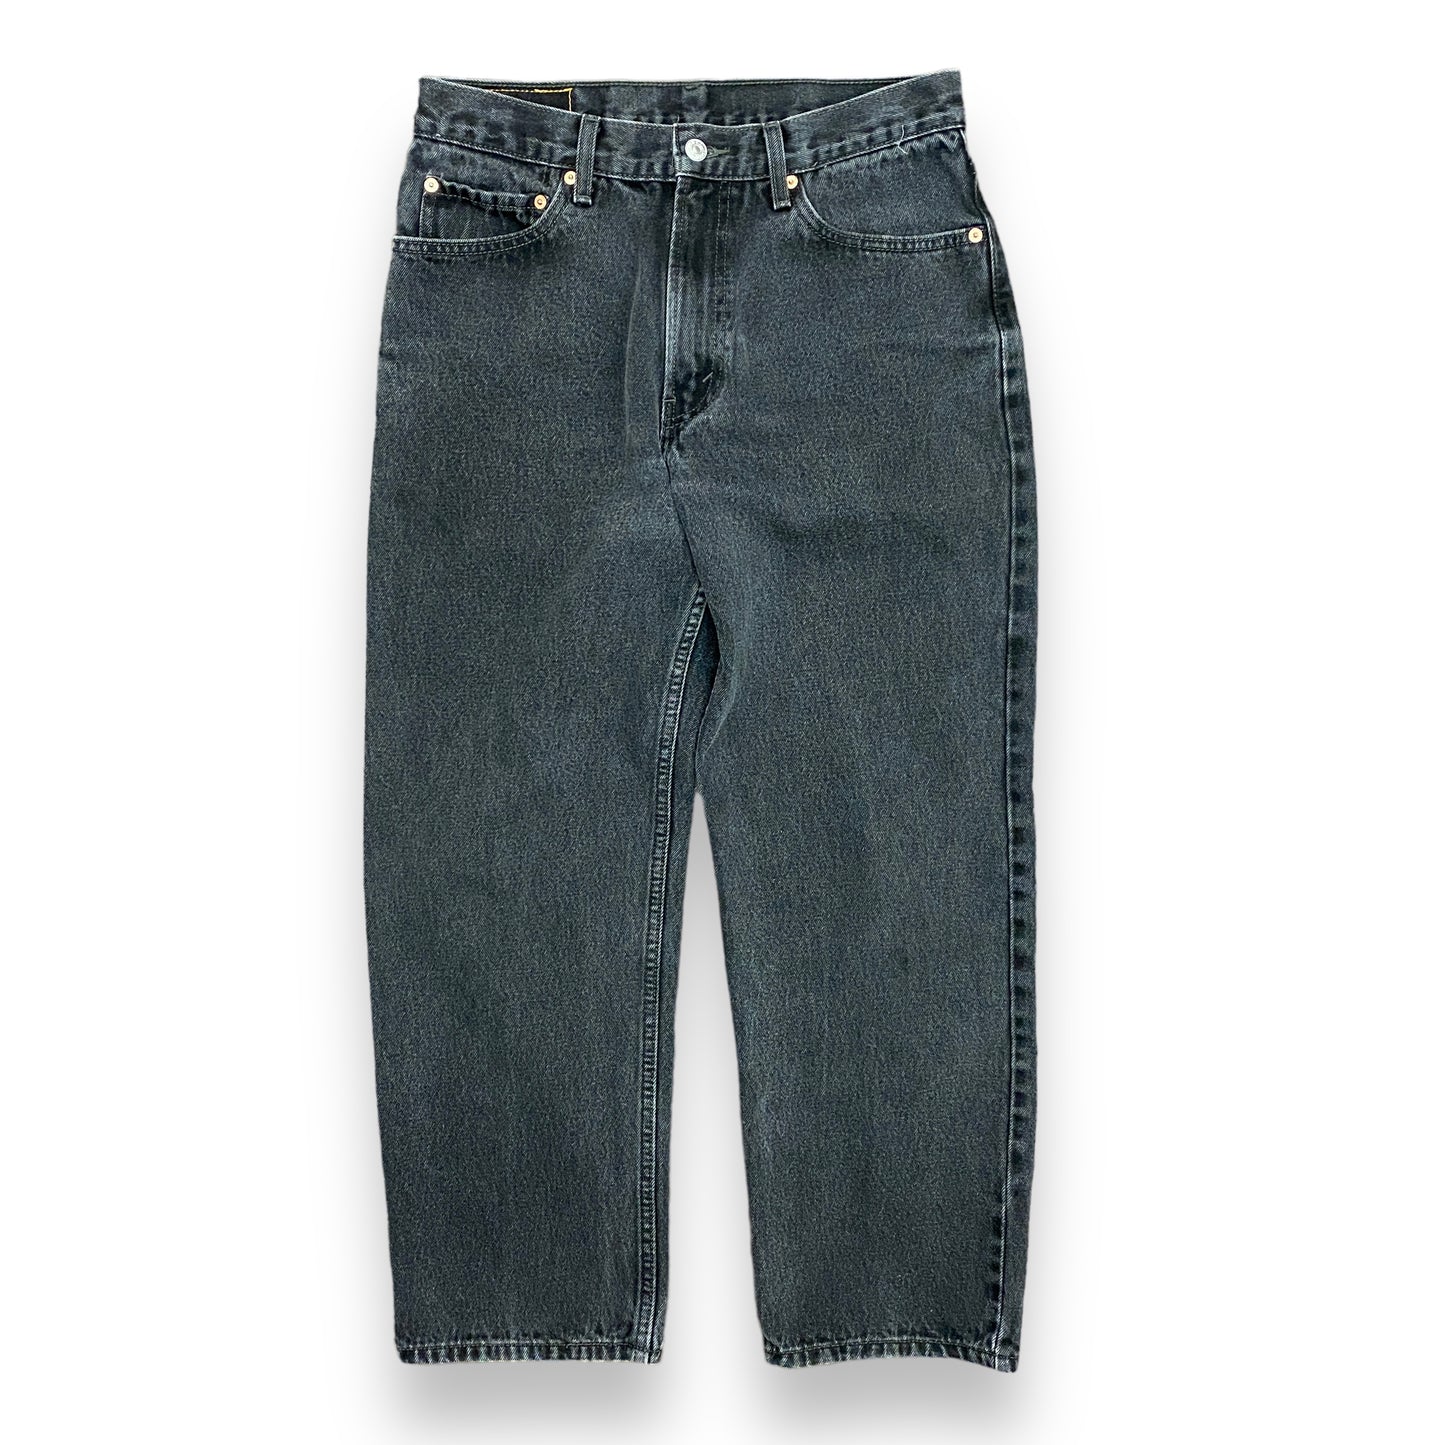 Vintage 90s Levi's Black Jeans - 31"x27"